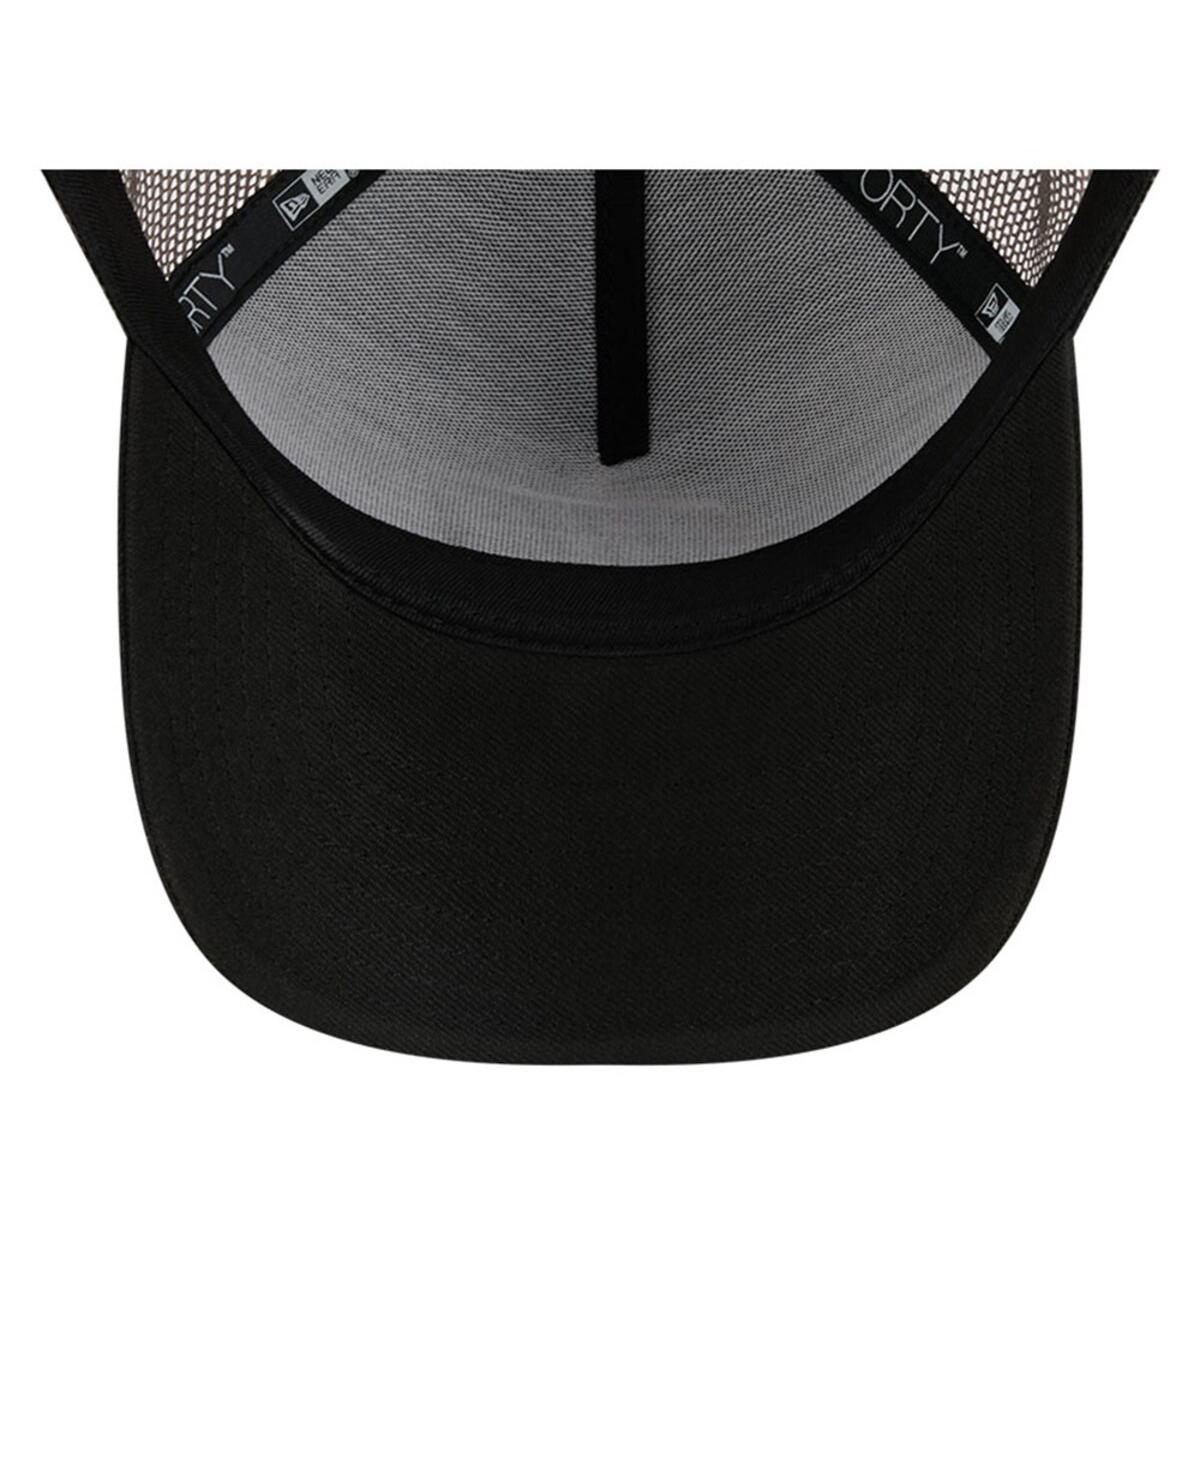 Shop New Era Men's  Black Nascar Camo 9forty A-frame Trucker Adjustable Hat